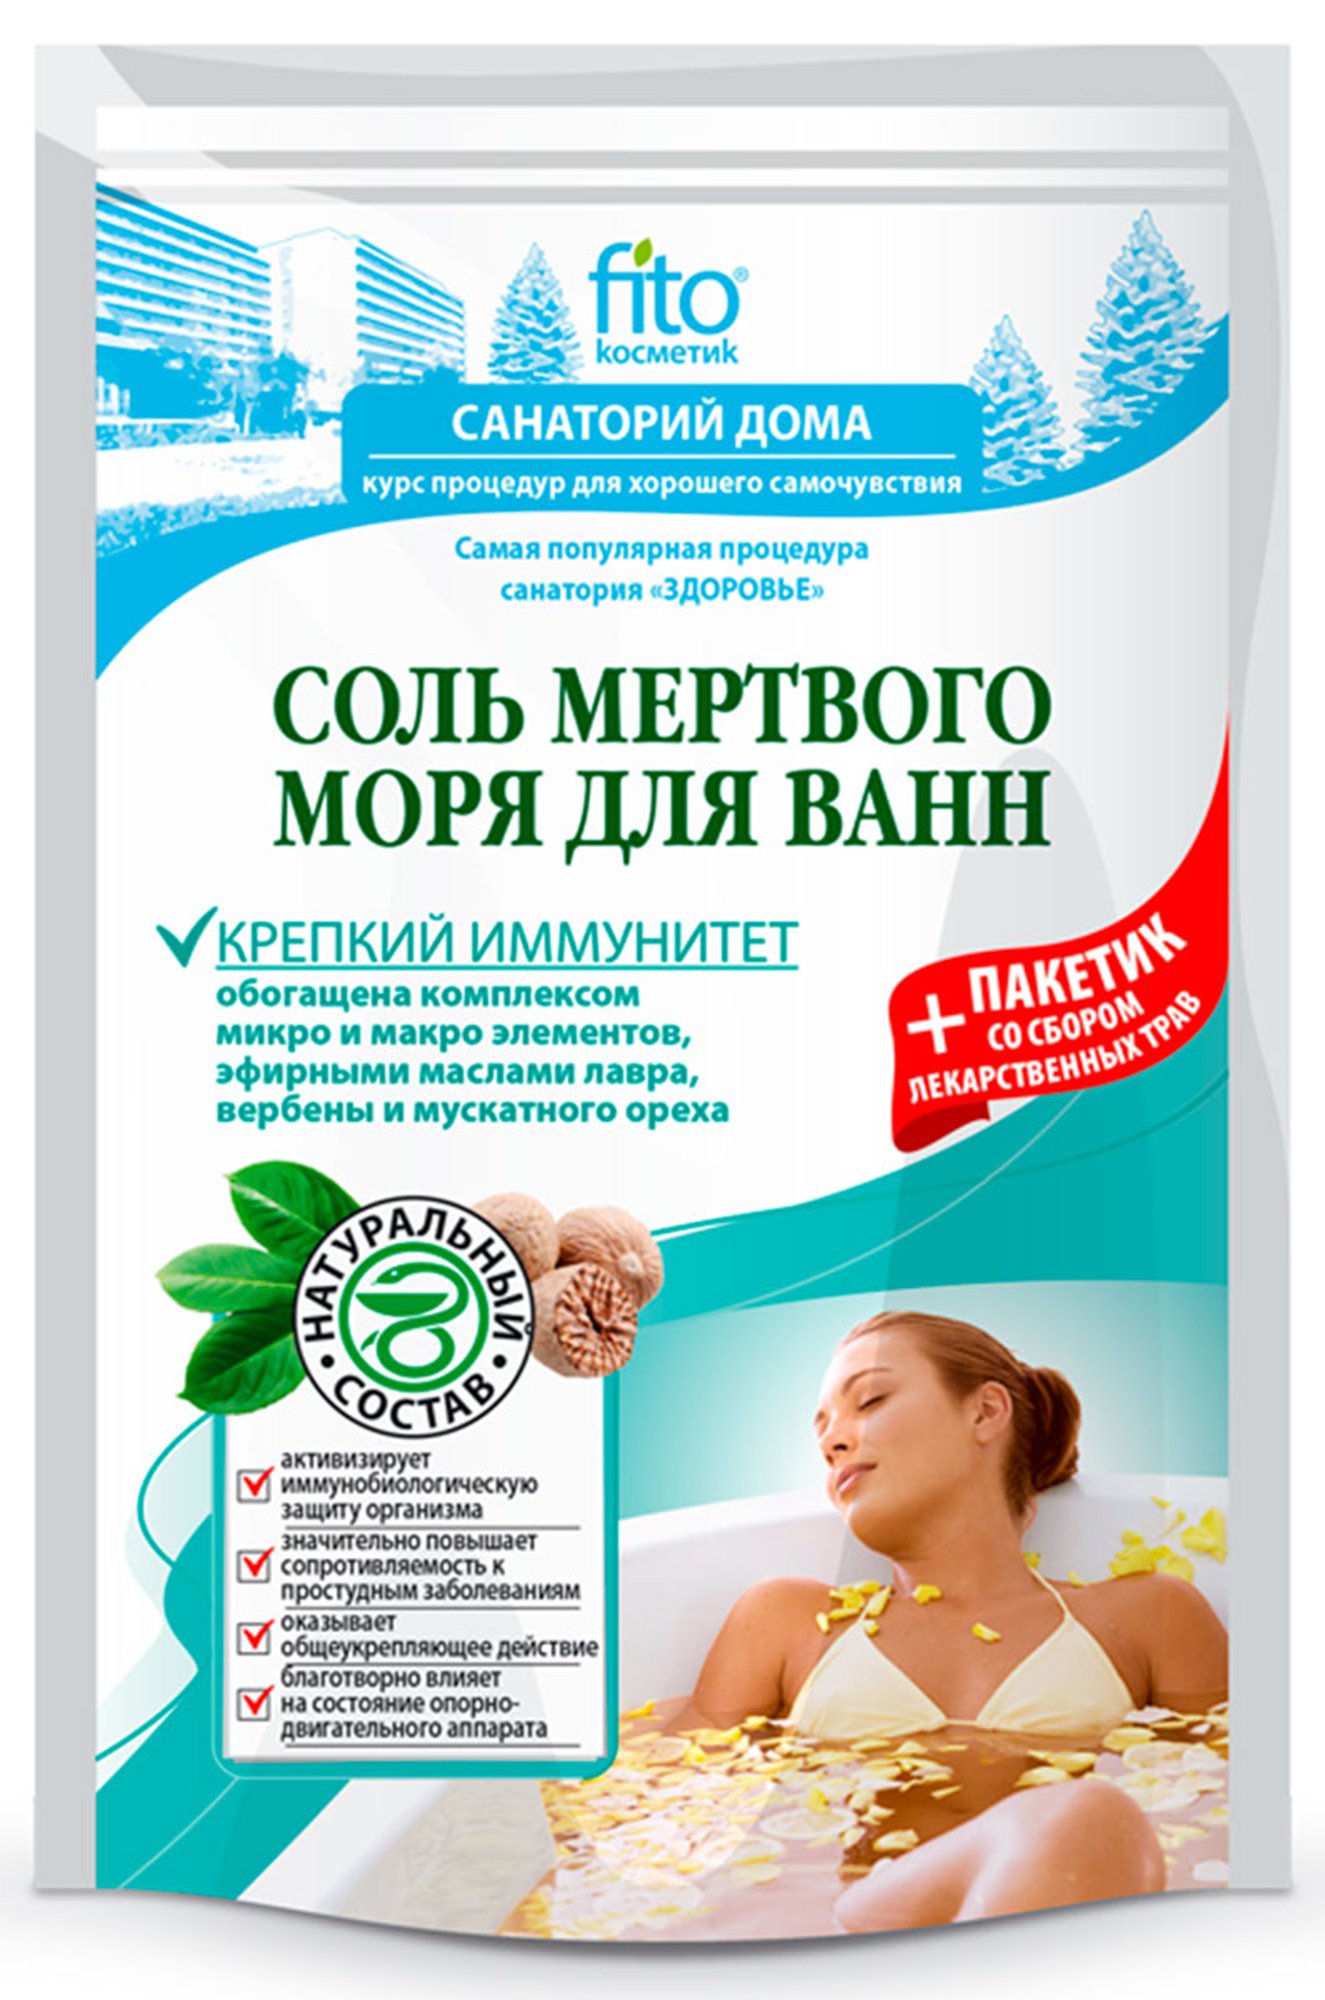 Соль для ванн Мертвого моря Крепкий иммунитет Санаторий дома 500 г и 30 г Fito косметик